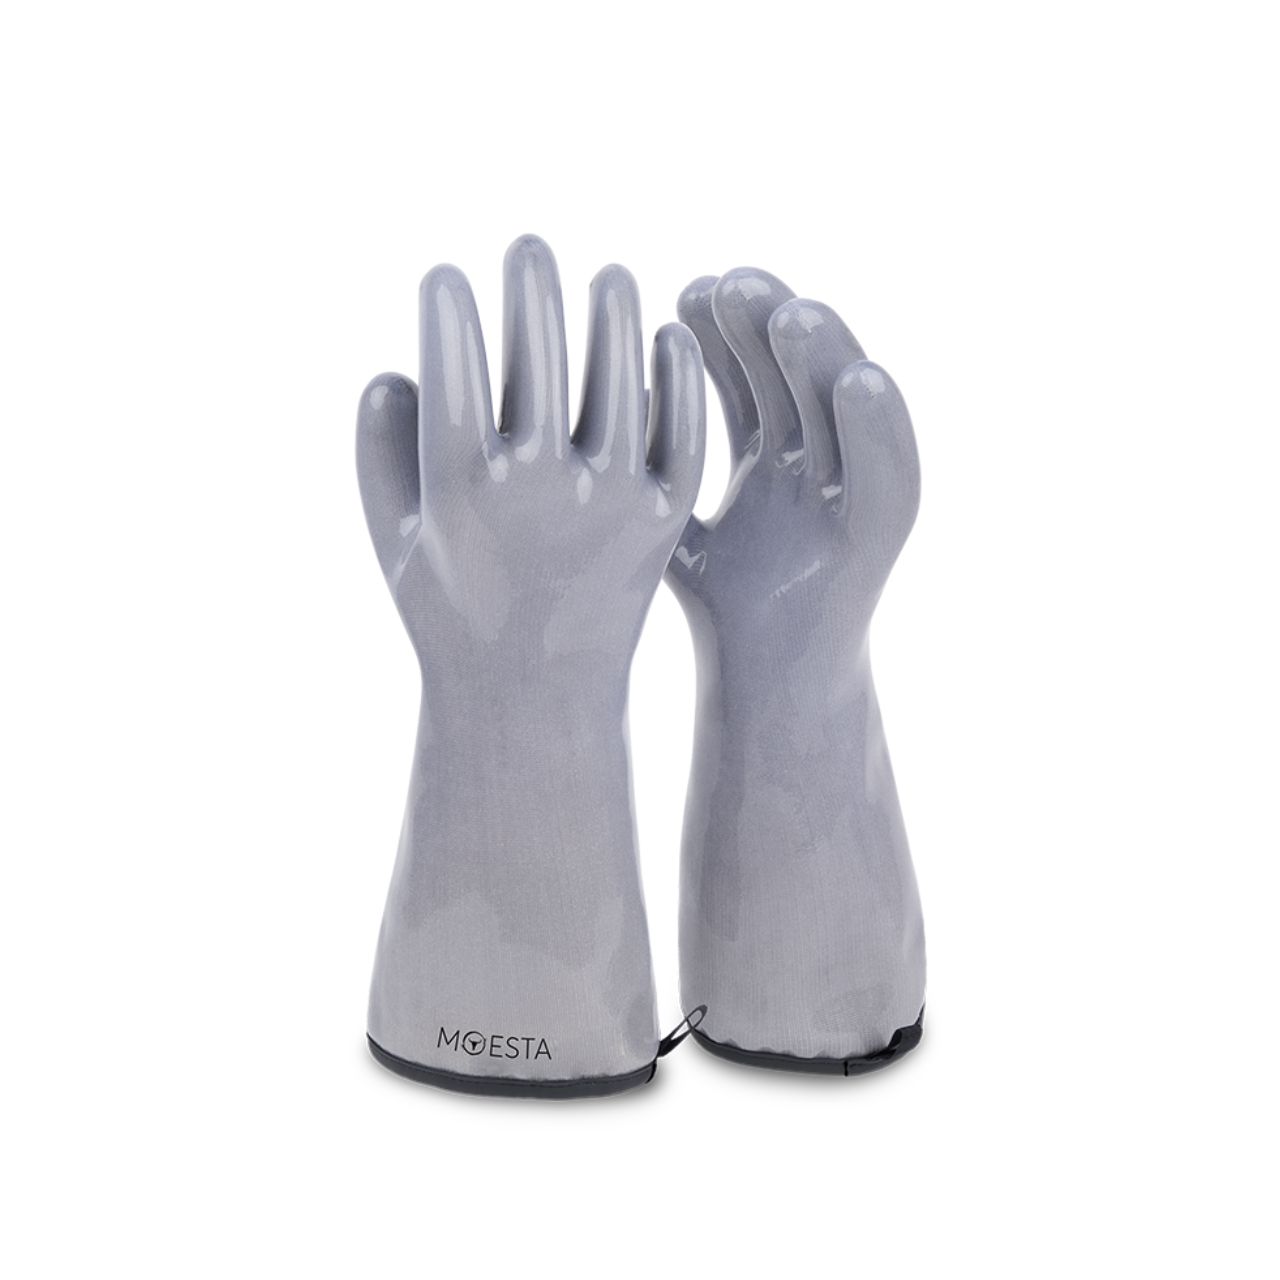 Moesta BBQ HeatPro Gloves - Grillhandschuhe aus Silikon - grau, Größe XL